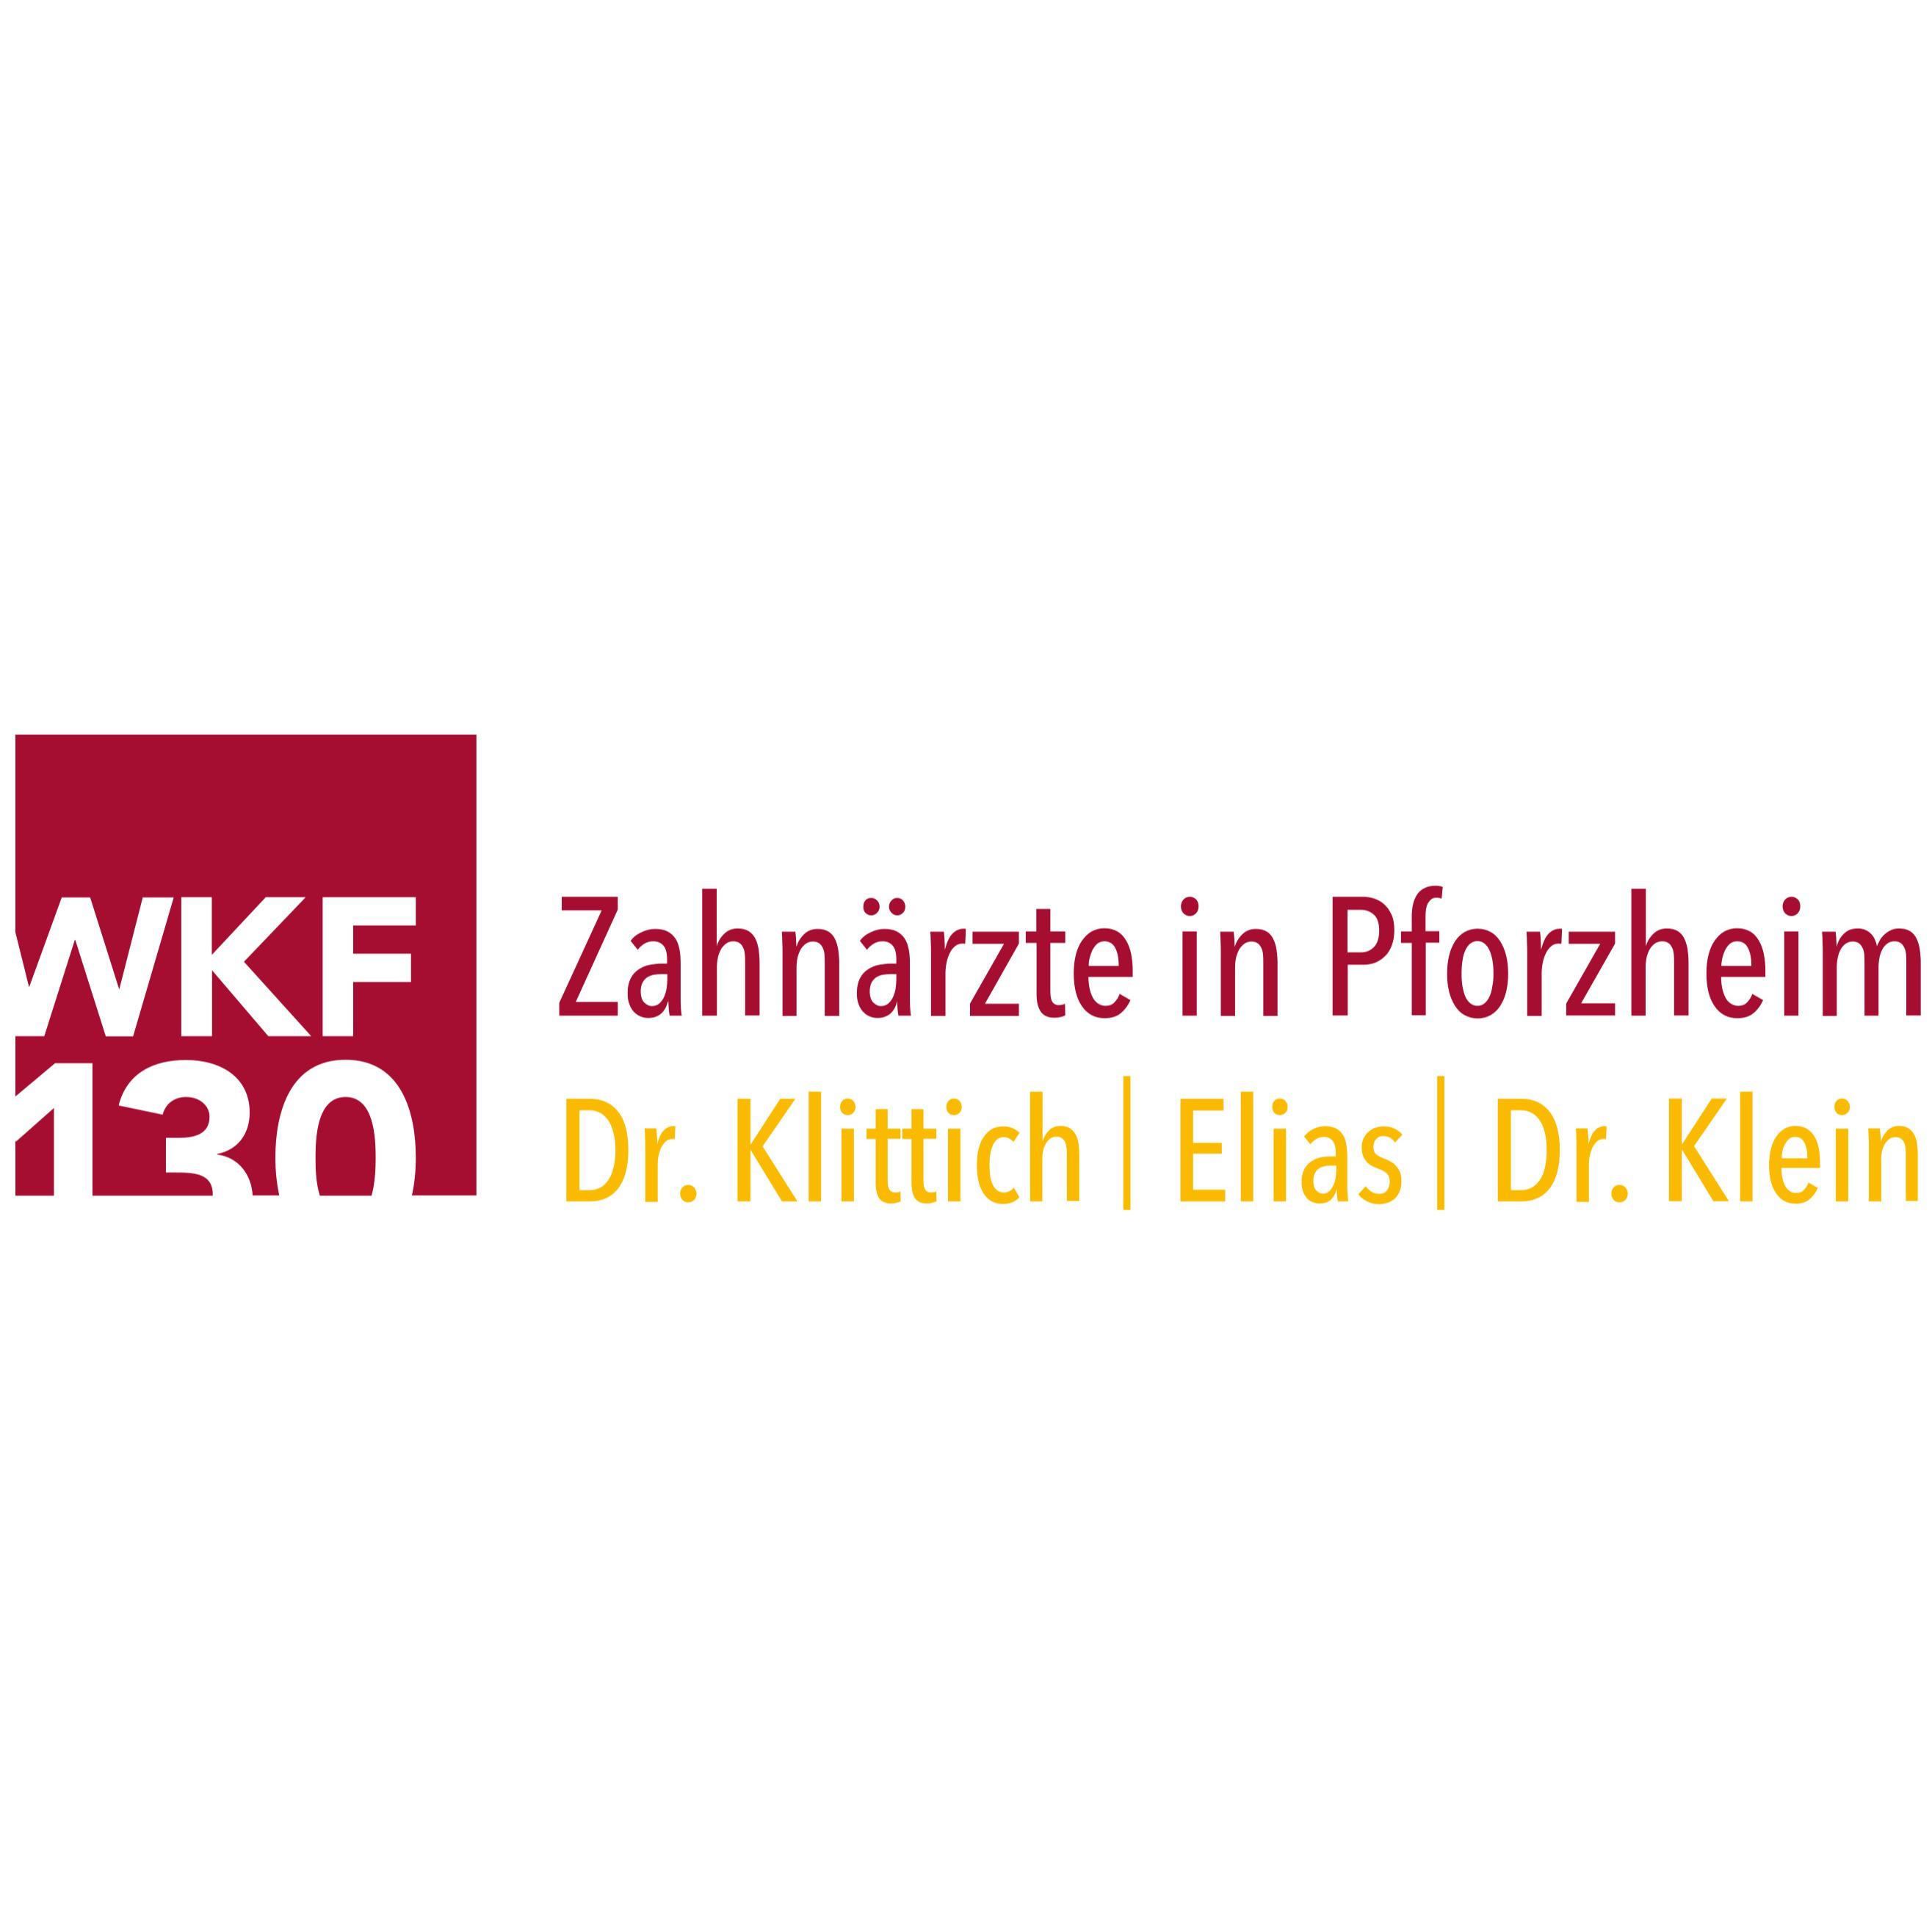 Zahnärzte in Pforzheim - WKF130  